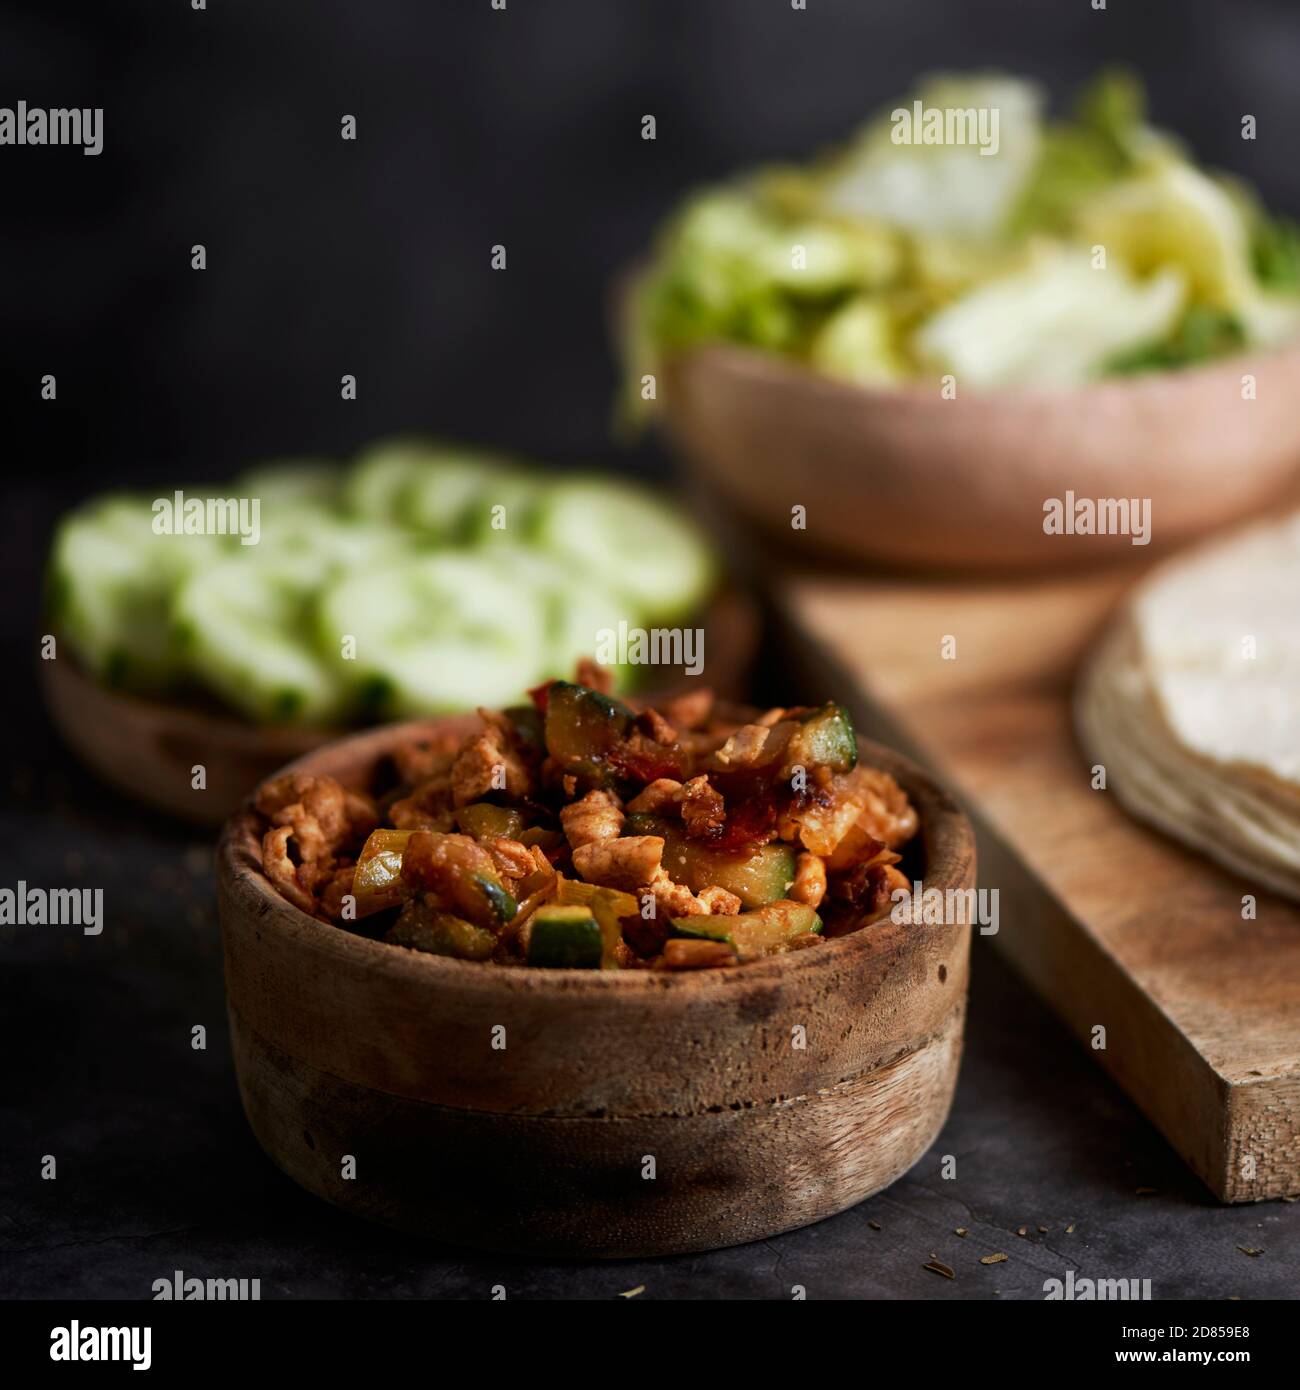 Eine Schüssel mit einem Huhn Fleisch und Gemüse Füllung auf einem Tisch, neben einem Teller mit einigen Scheiben Gurke, eine Schüssel mit Salat und einige Tortillas oder Stockfoto